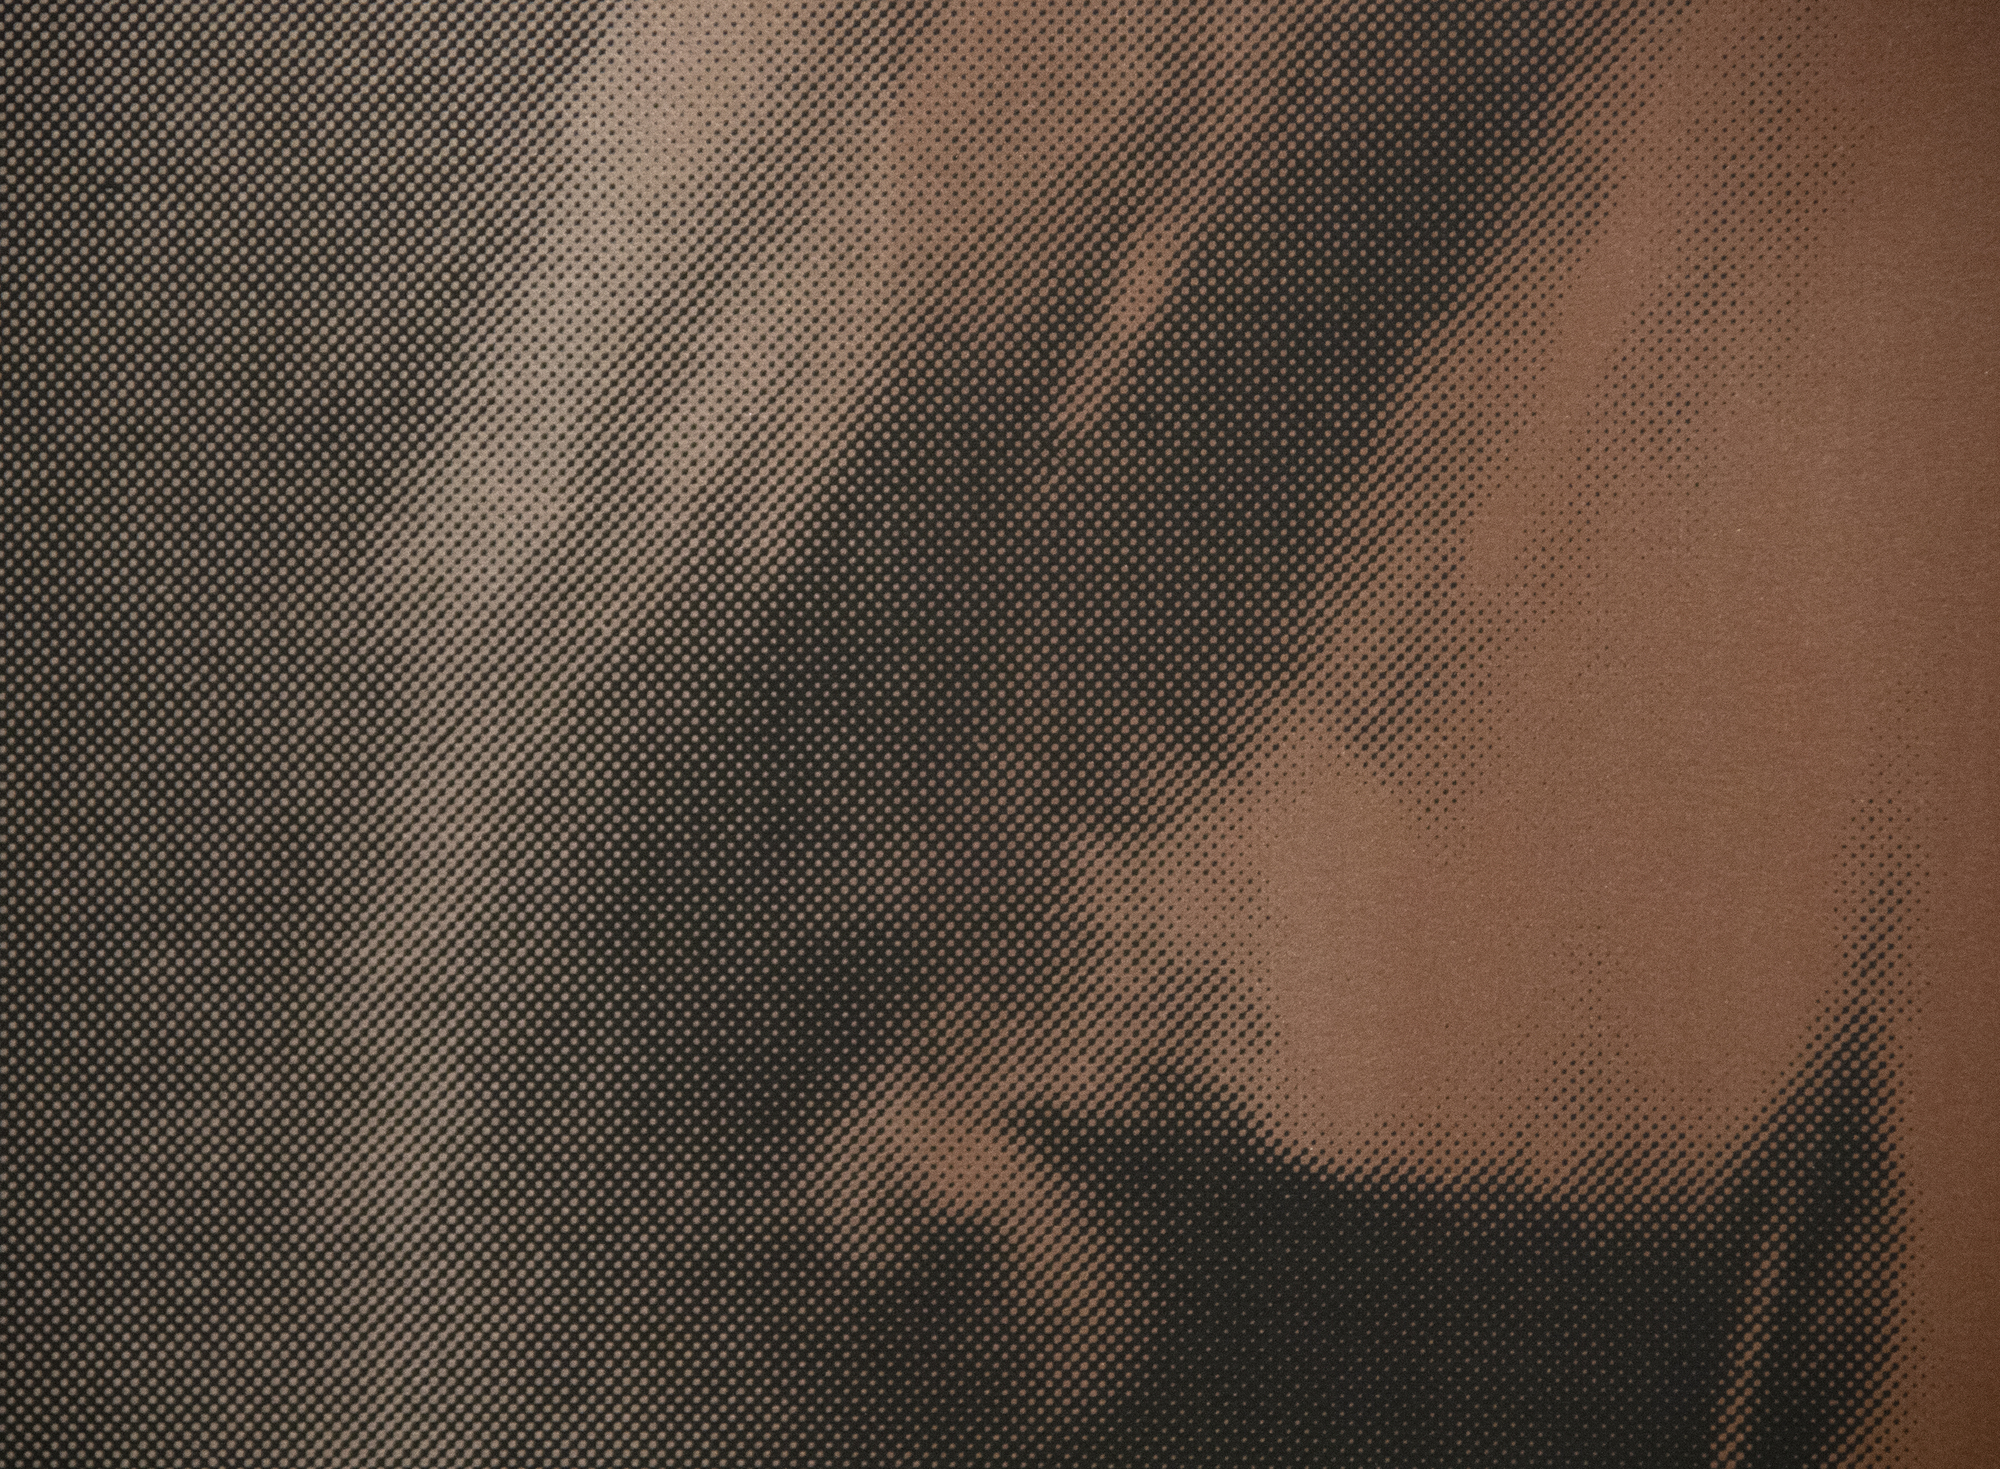 אנדי וורהול - הצל (מתוך מיתוסים) - הדפסת מסך צבעונית עם אבק יהלומים על נייר - 37 1/2 x 37 1/2 אינץ'.